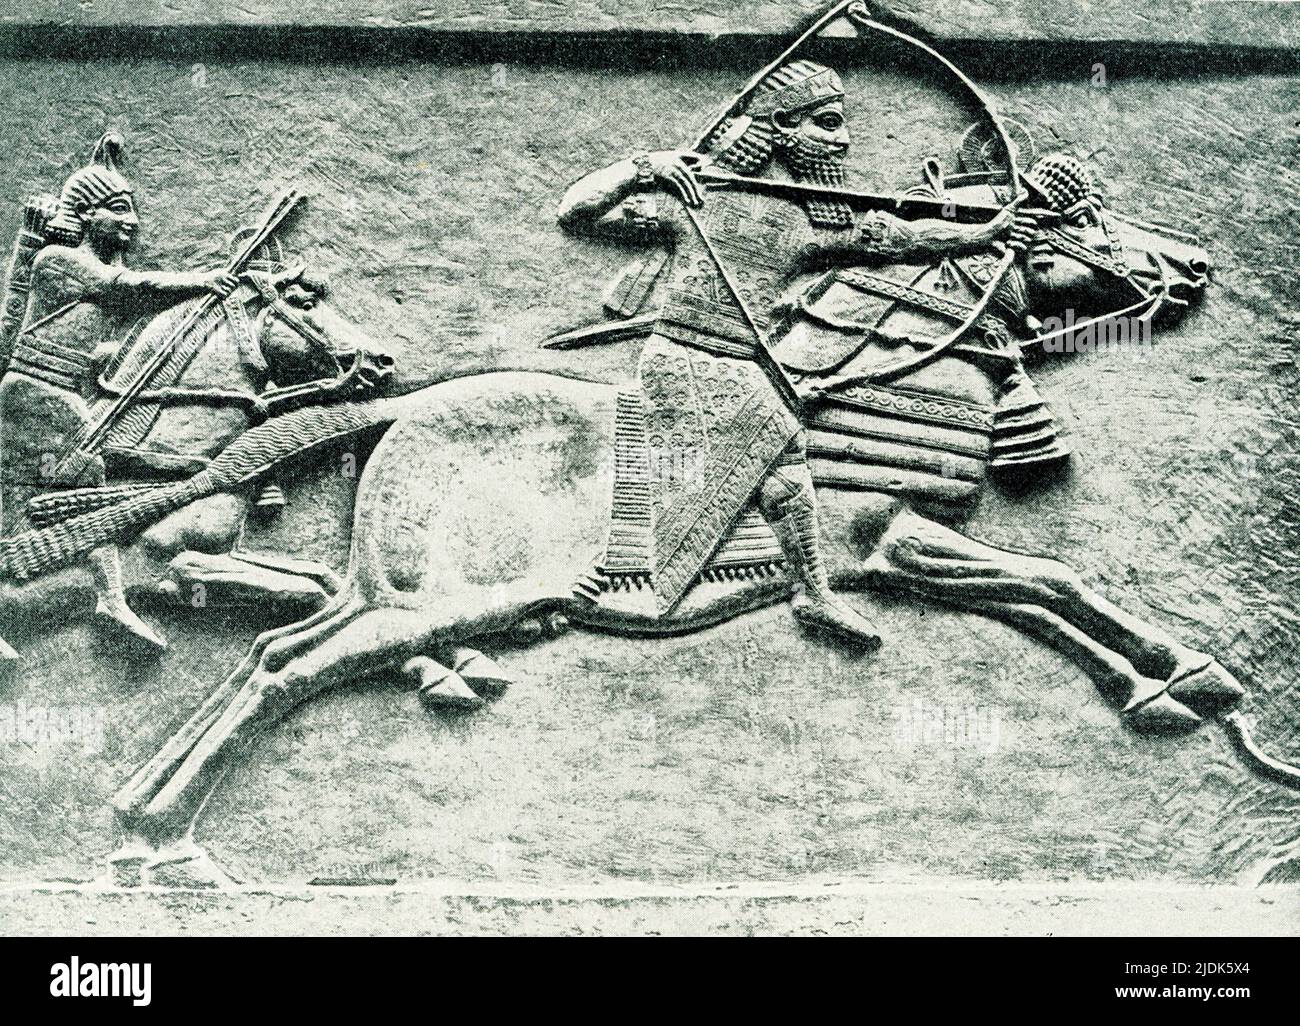 Esta imagen de 1910 muestra la caza de un rey asirio. El relieve de piedra se encuentra en el Museo Británico de Londres. Aquí, el rey Ashurbanipal avanza galope, disparando contra asnos salvajes. Uno de los jinetes detrás de él tiene flechas libres y el otro tiene un soporte de repuesto. Los asnos son tirados o tirados hacia abajo por perros. Ashurbanipal gobernó en el año 600s a.C. La fecha de este alivio descubierto en el Palacio Norte de Nínive es 645-635 aC. Foto de stock